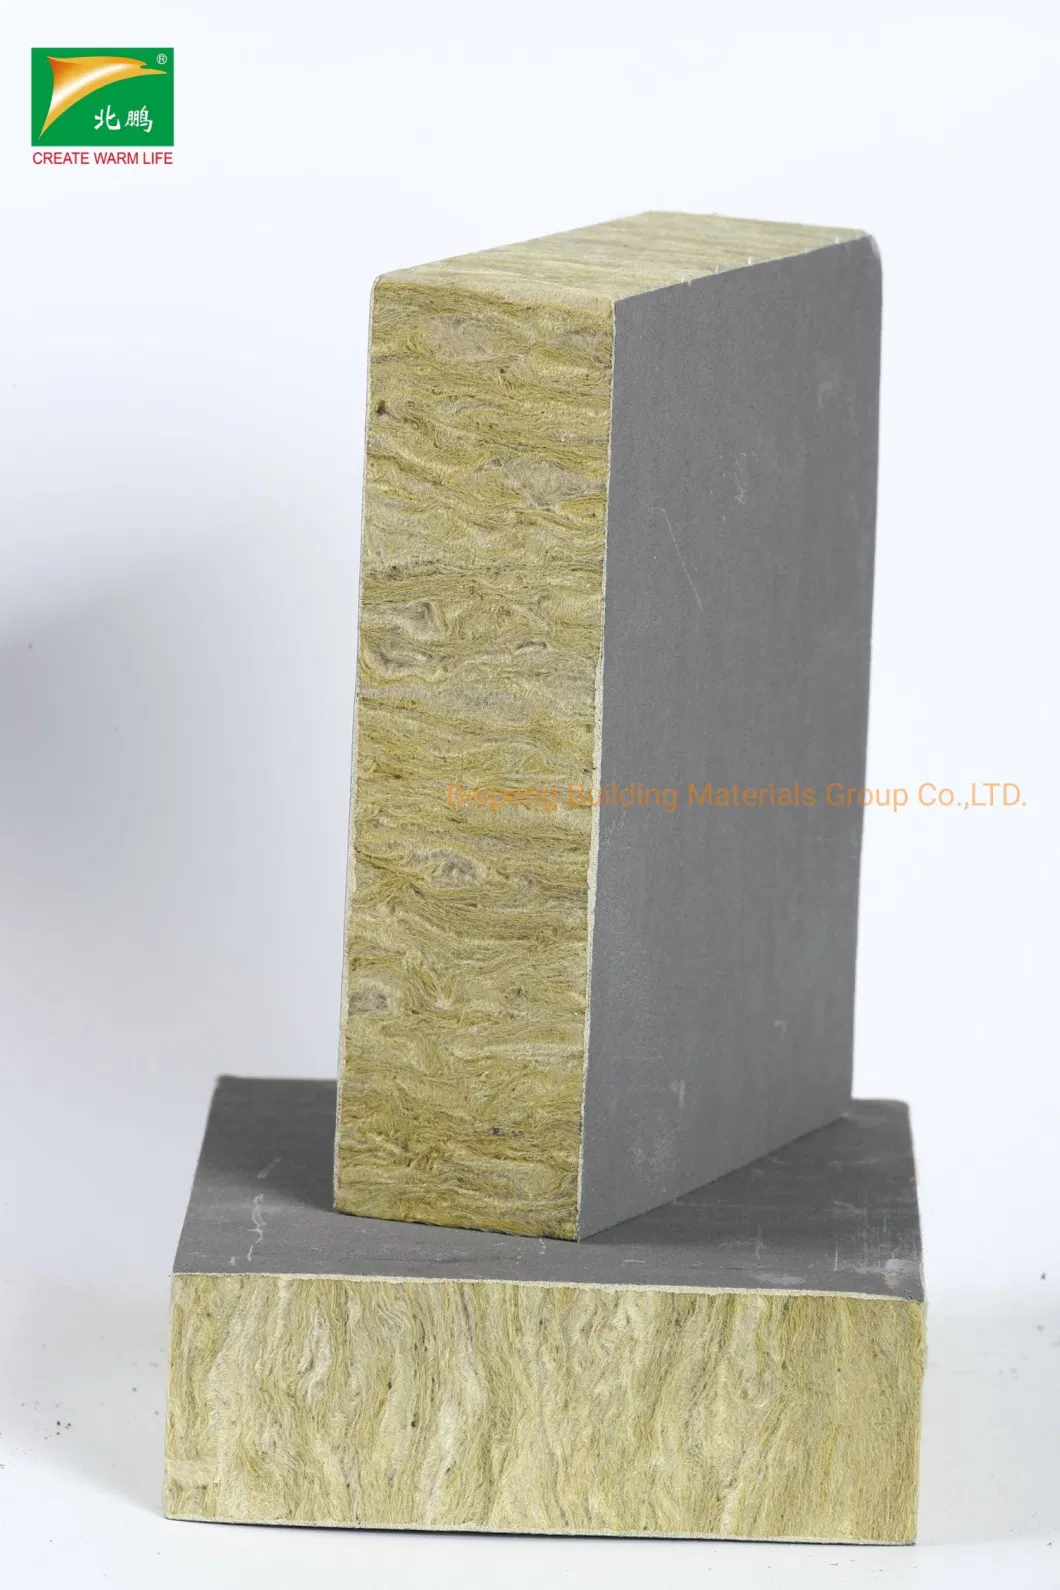 Beipeng External Wall Rock Wool Board, Rockwool Insulation Building Materials